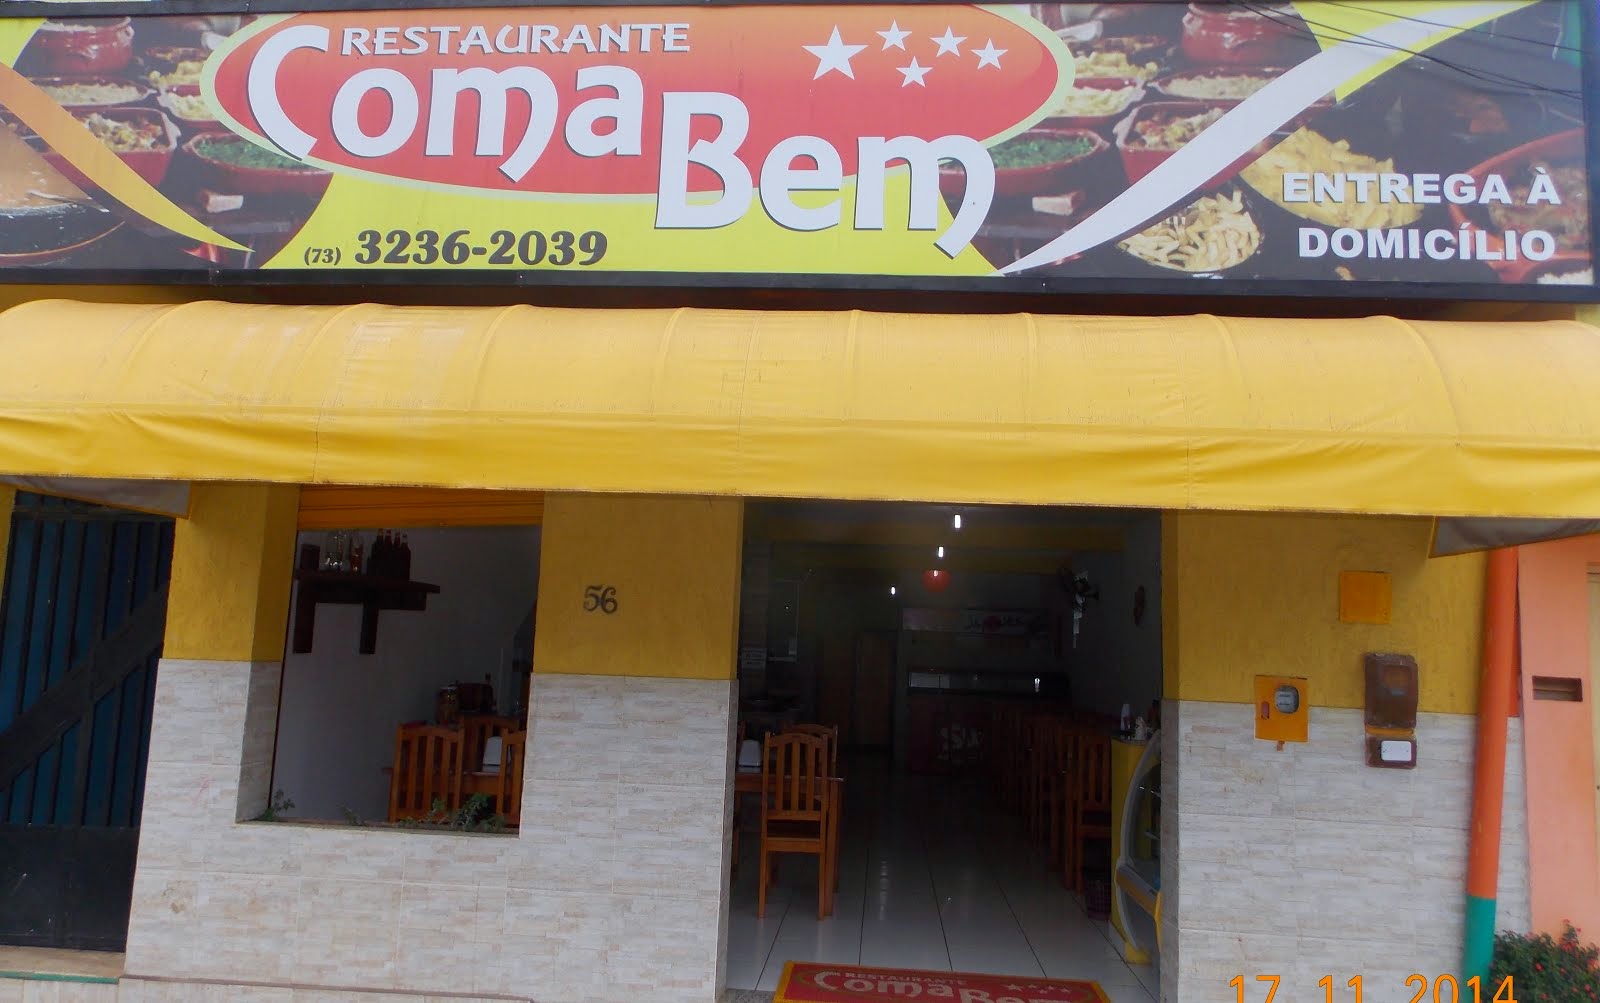 Restaurante Coma Bem!!!